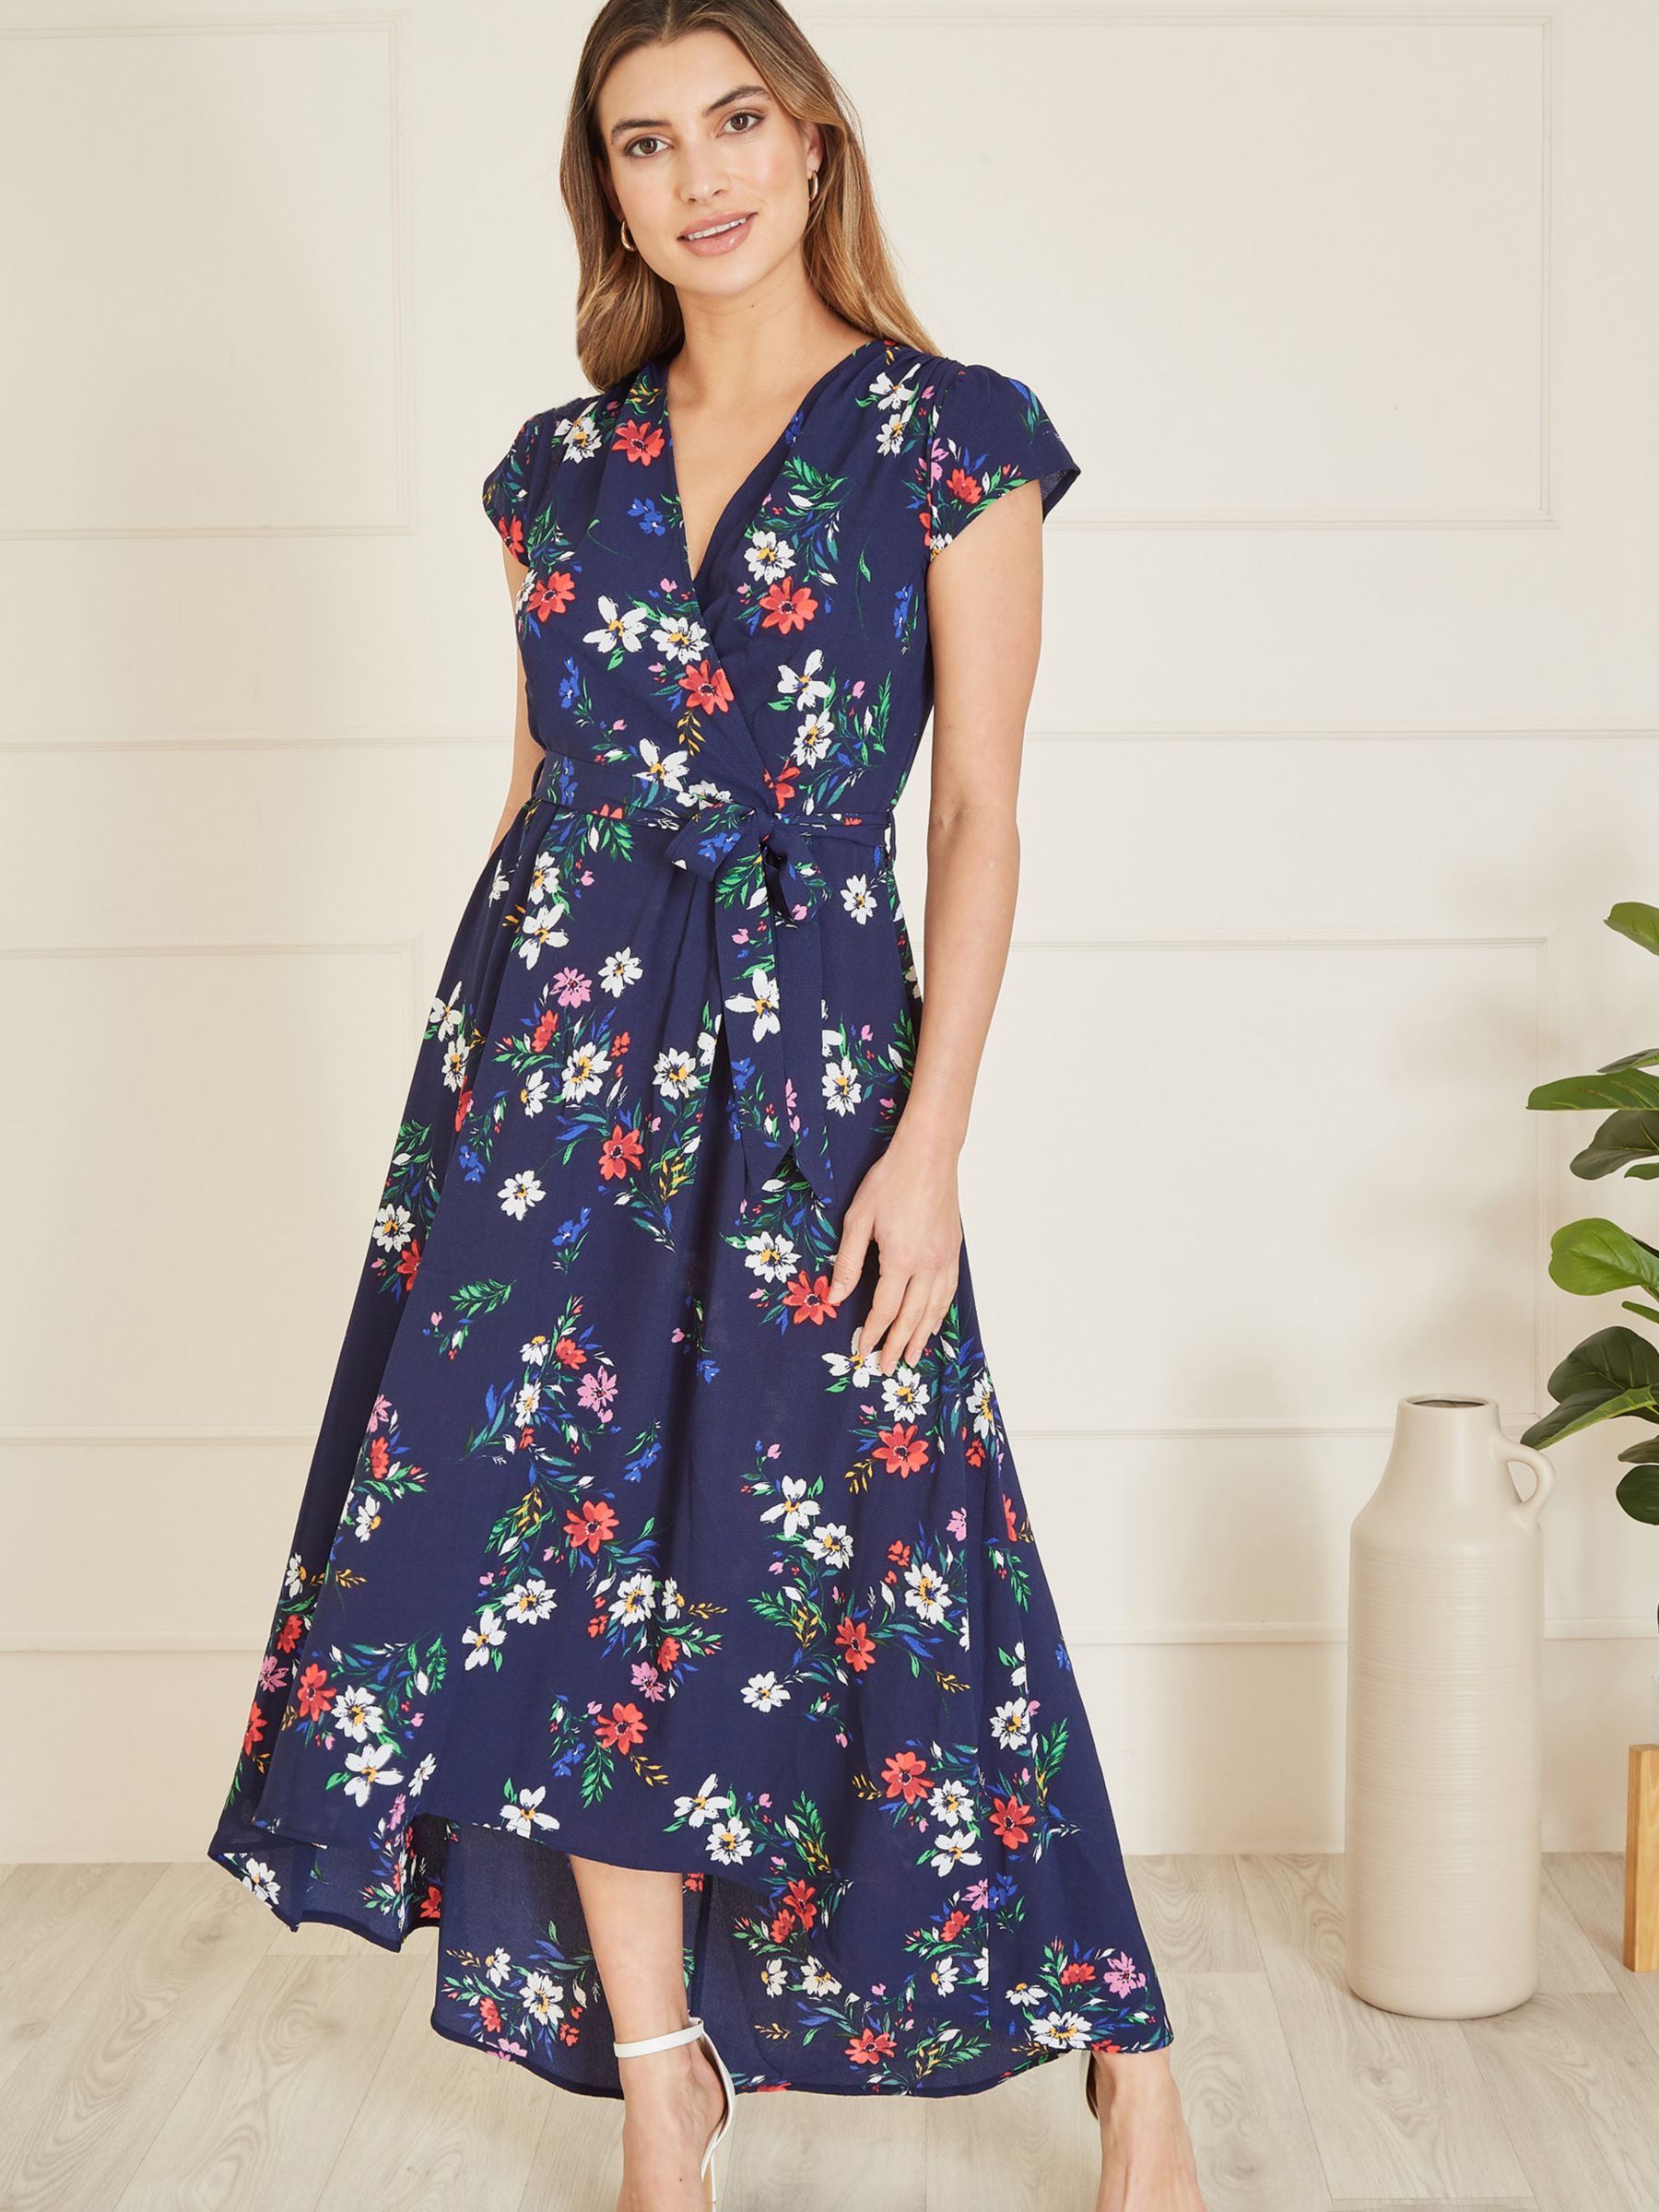 Mela London Floral Print Dip Hem Midi Dress, Navy/Multi, 8